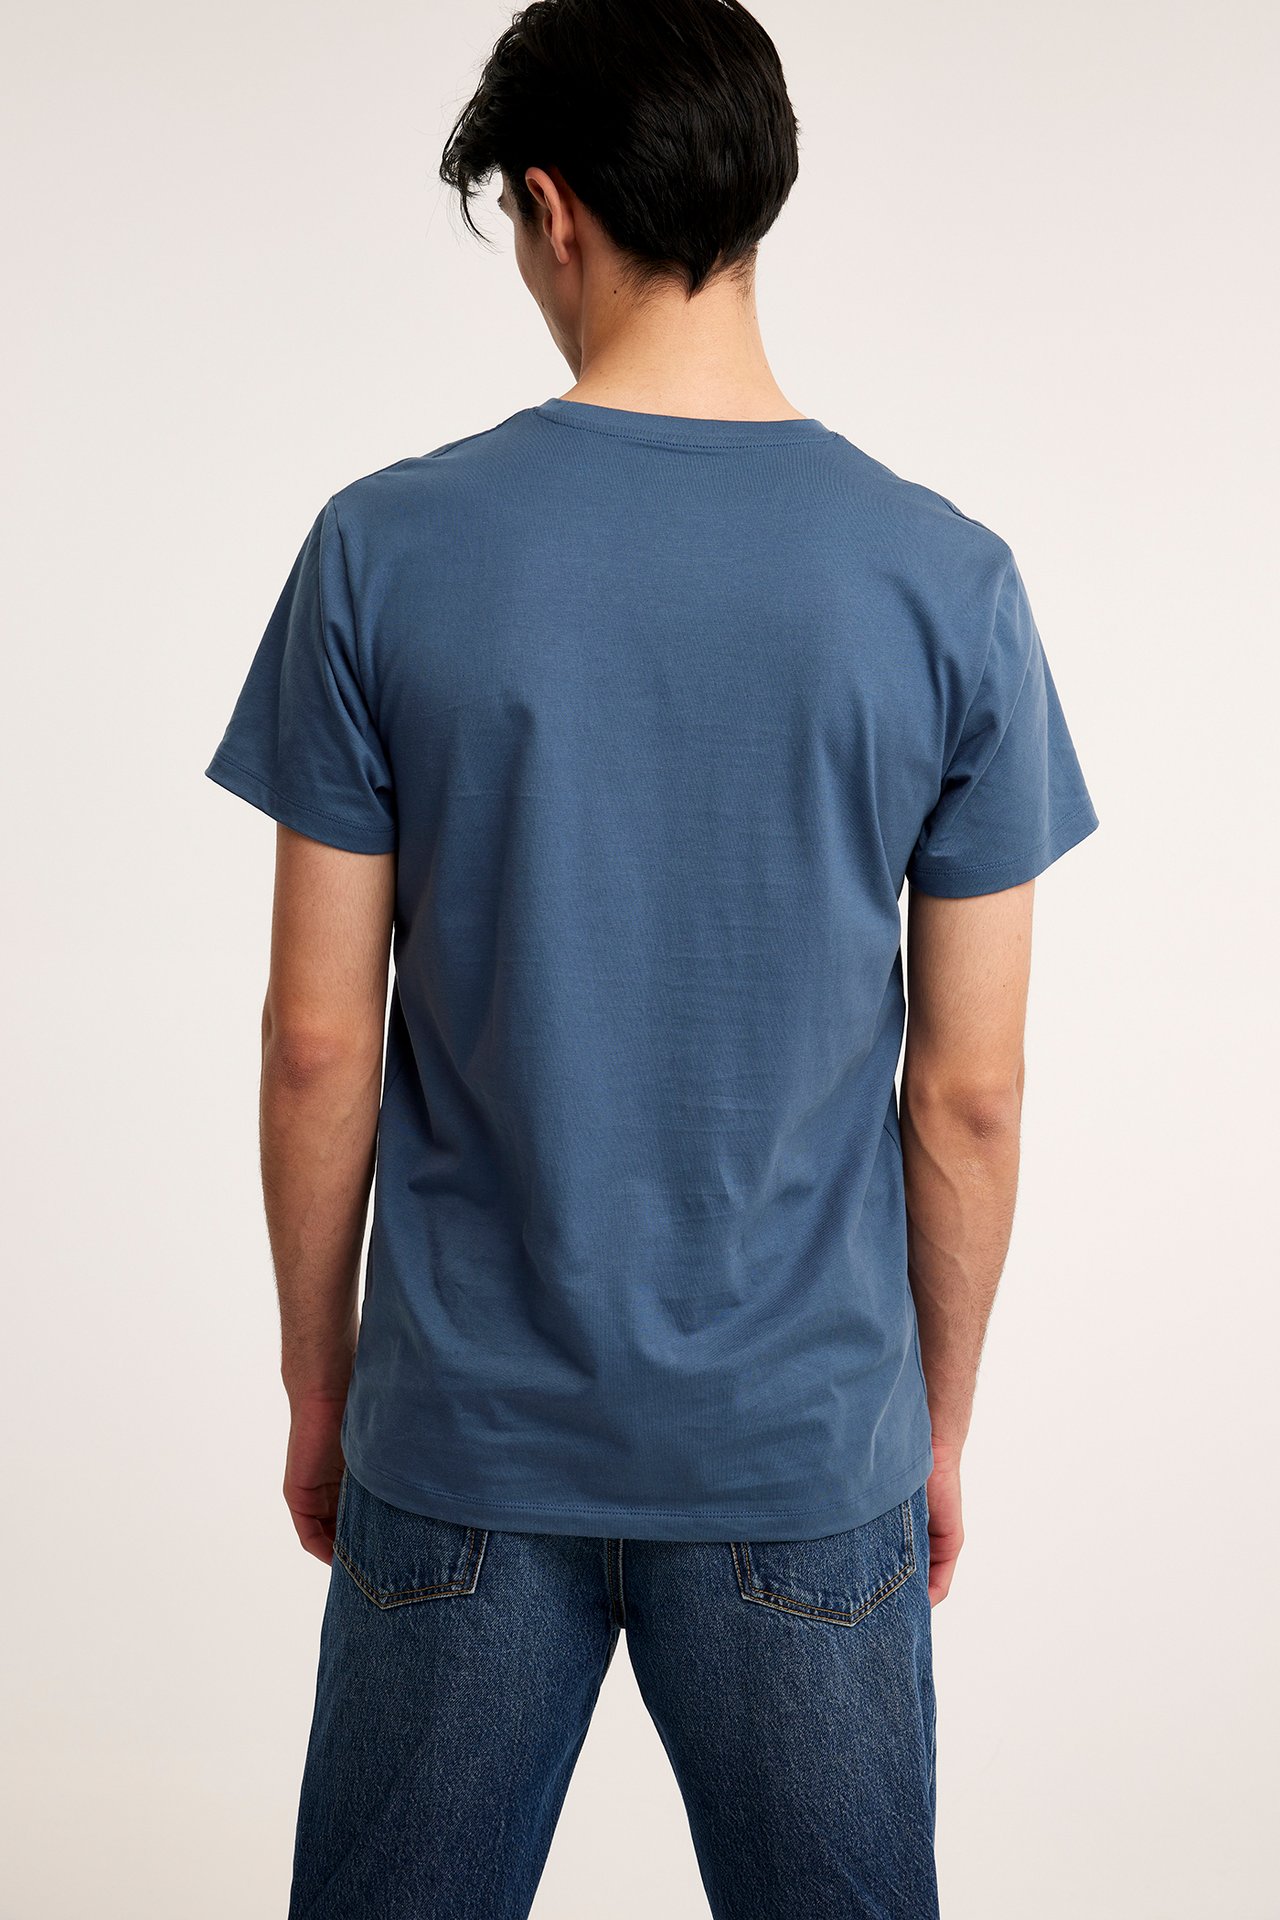 T-paita, jossa pyöreä pääntie Tummansininen - null - 8